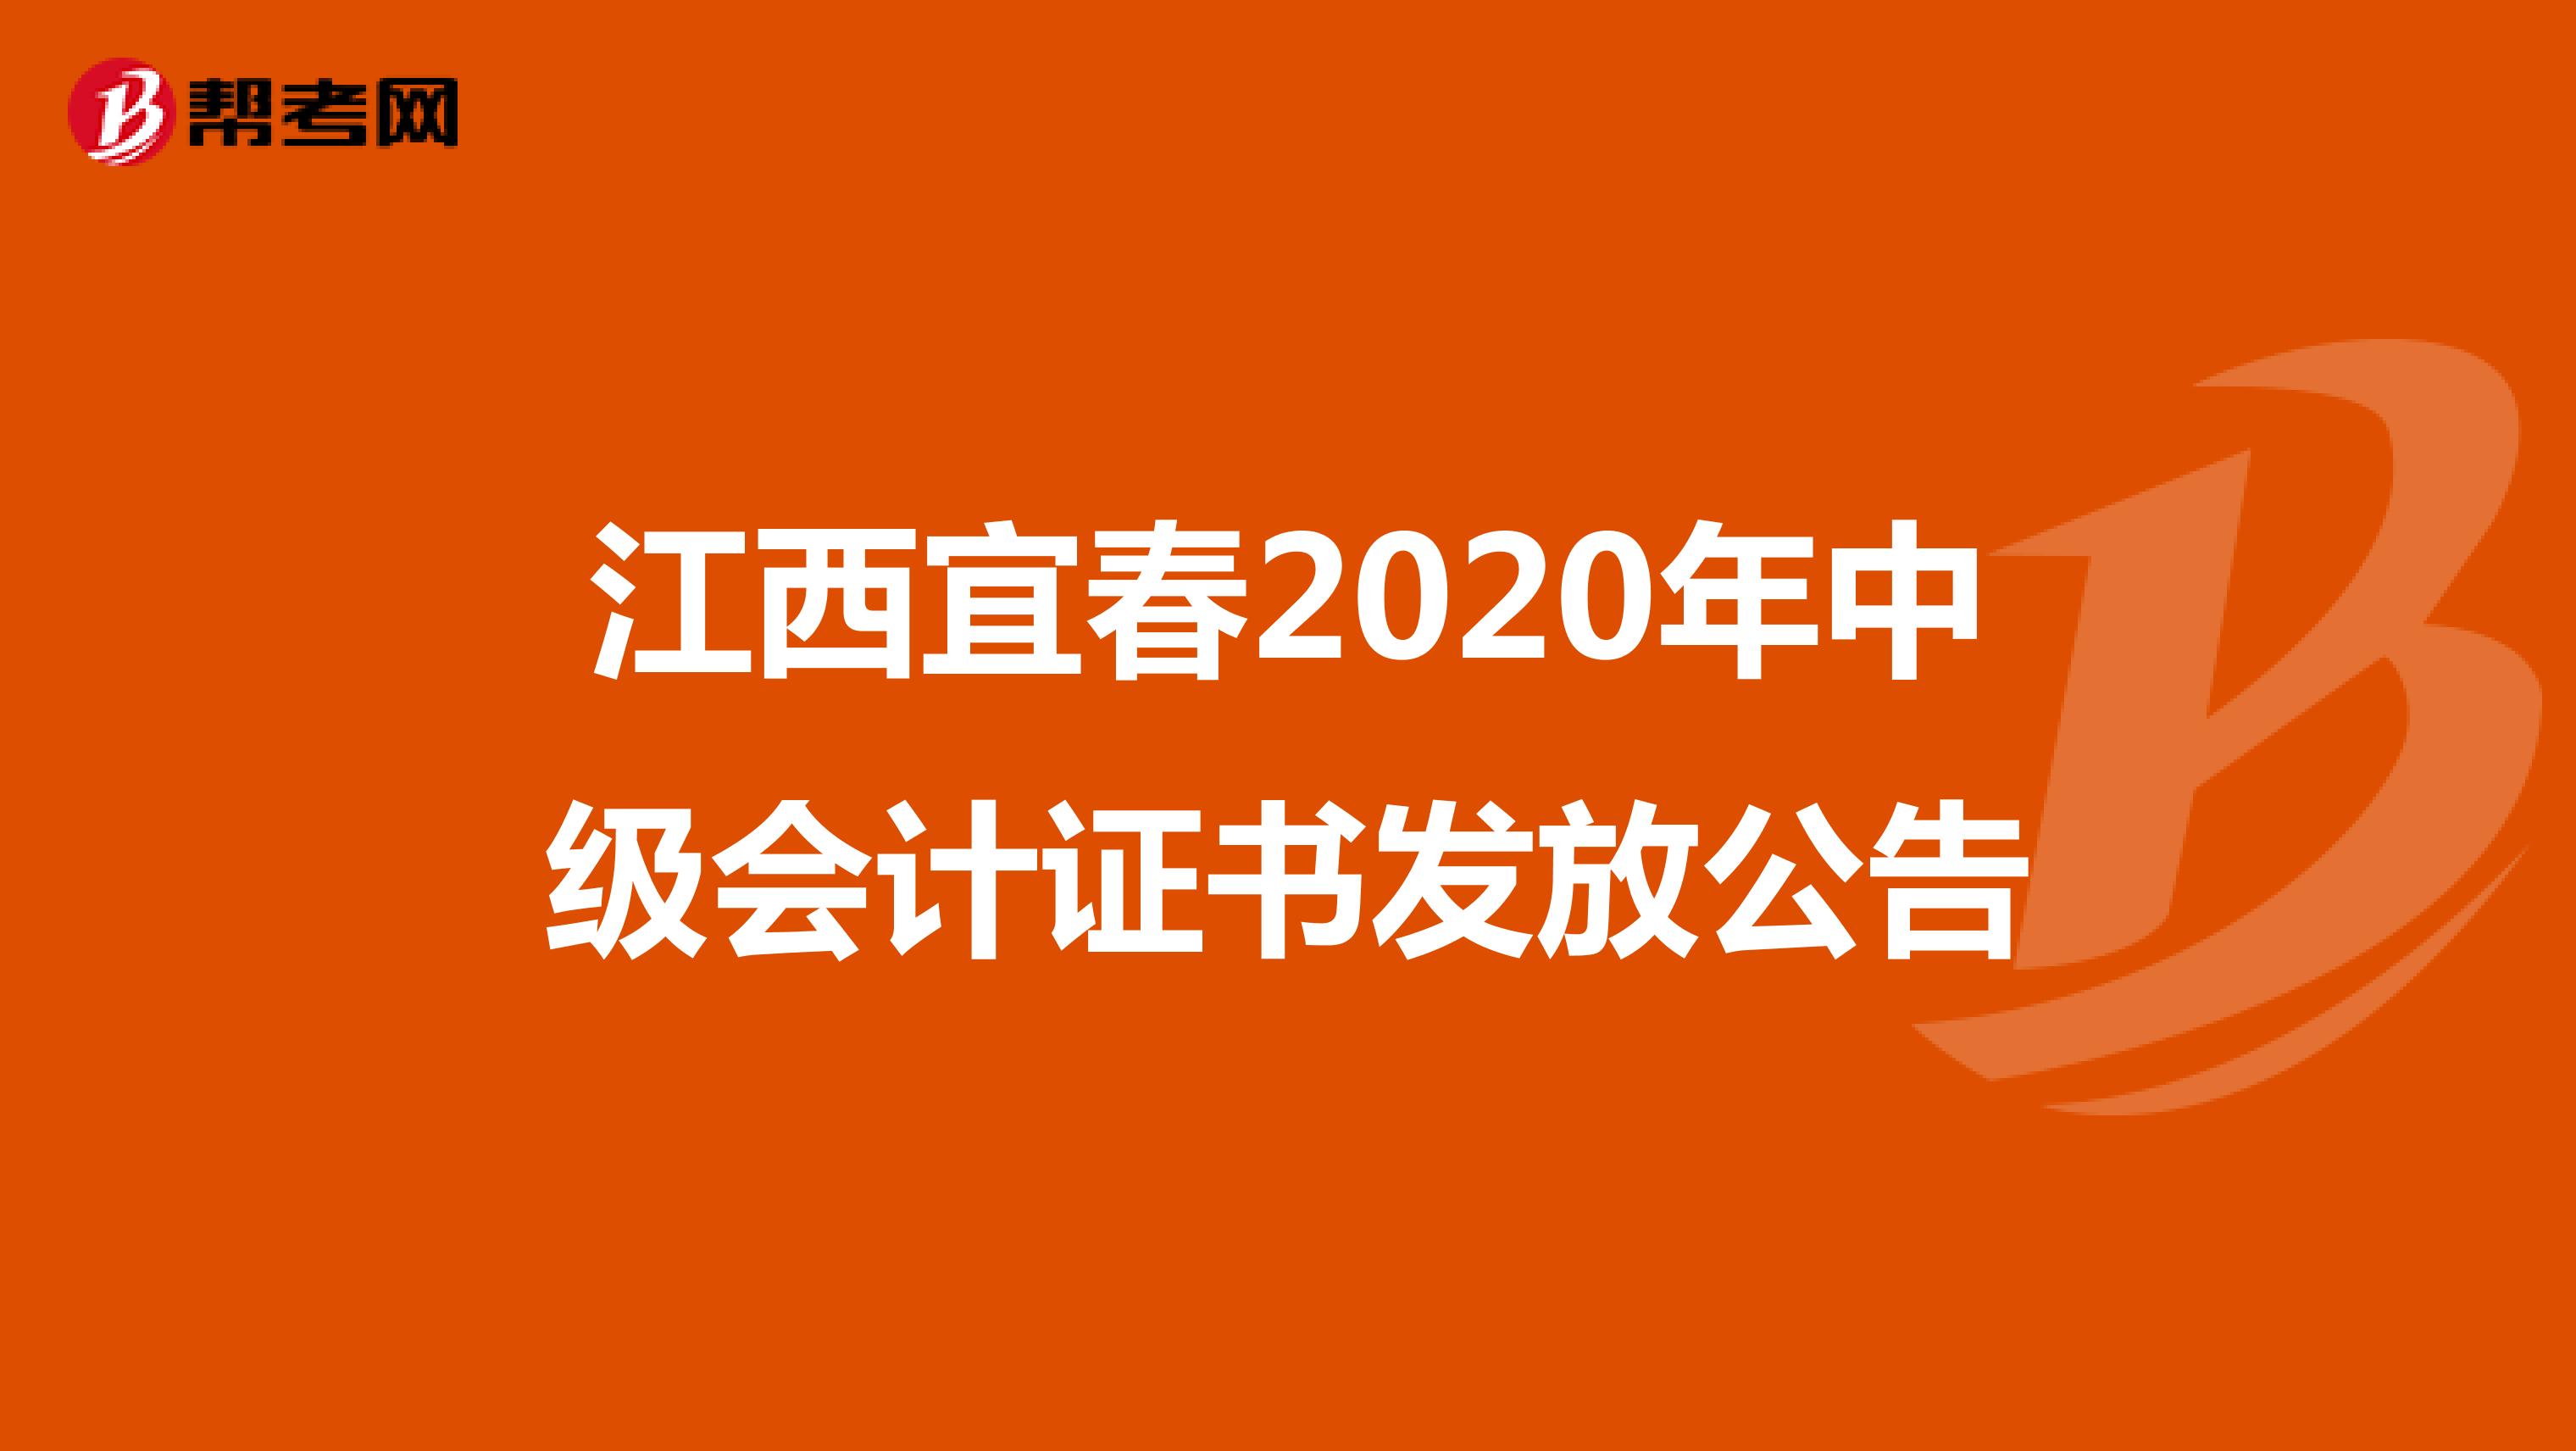 江西宜春2020年中级会计证书发放公告